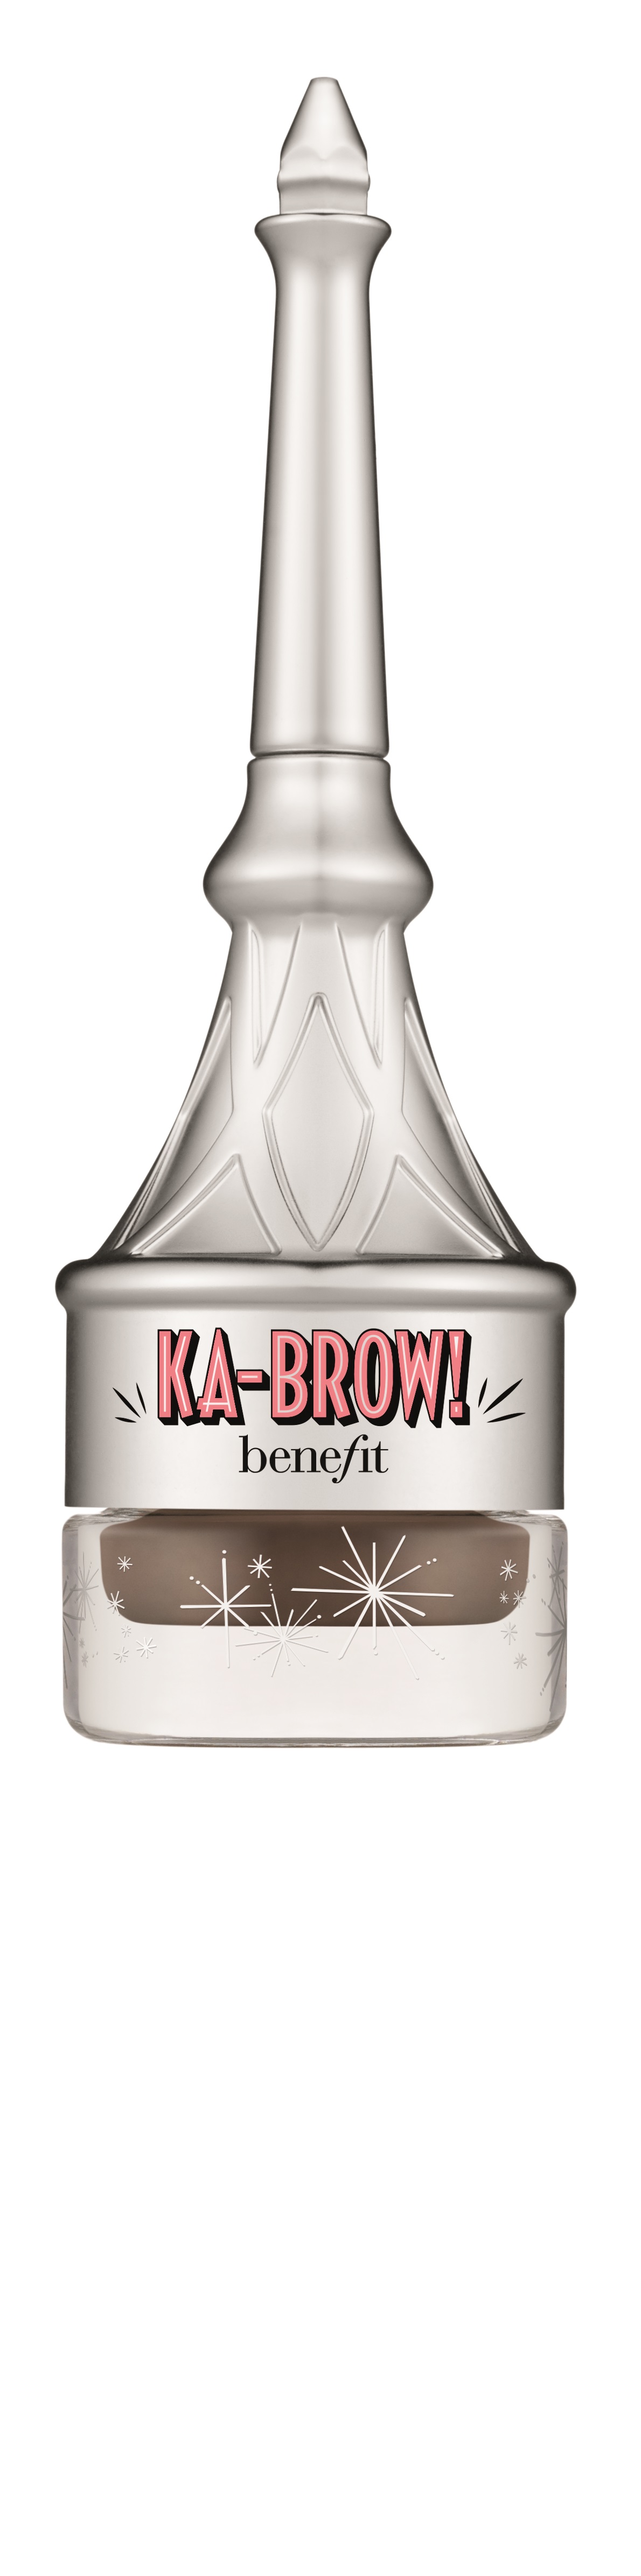 الجل الكريمي الملون للحواجب Ka-BROW